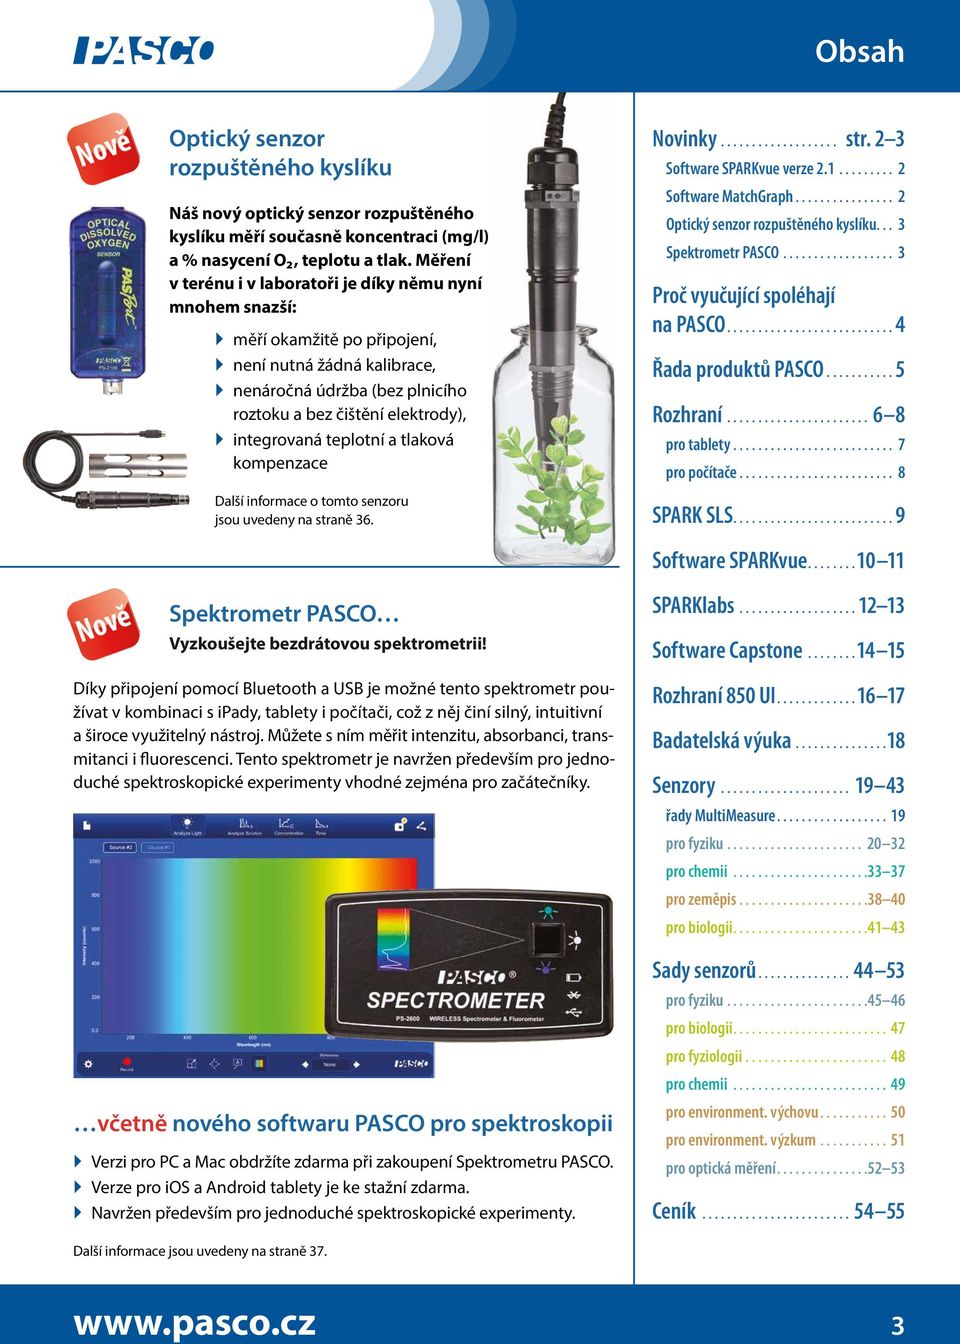 teplotní a tlaková kompenzace Další informace o tomto senzoru jsou uvedeny na straně 36. Novinky str. 2 3 Software SPARKvue verze 2.